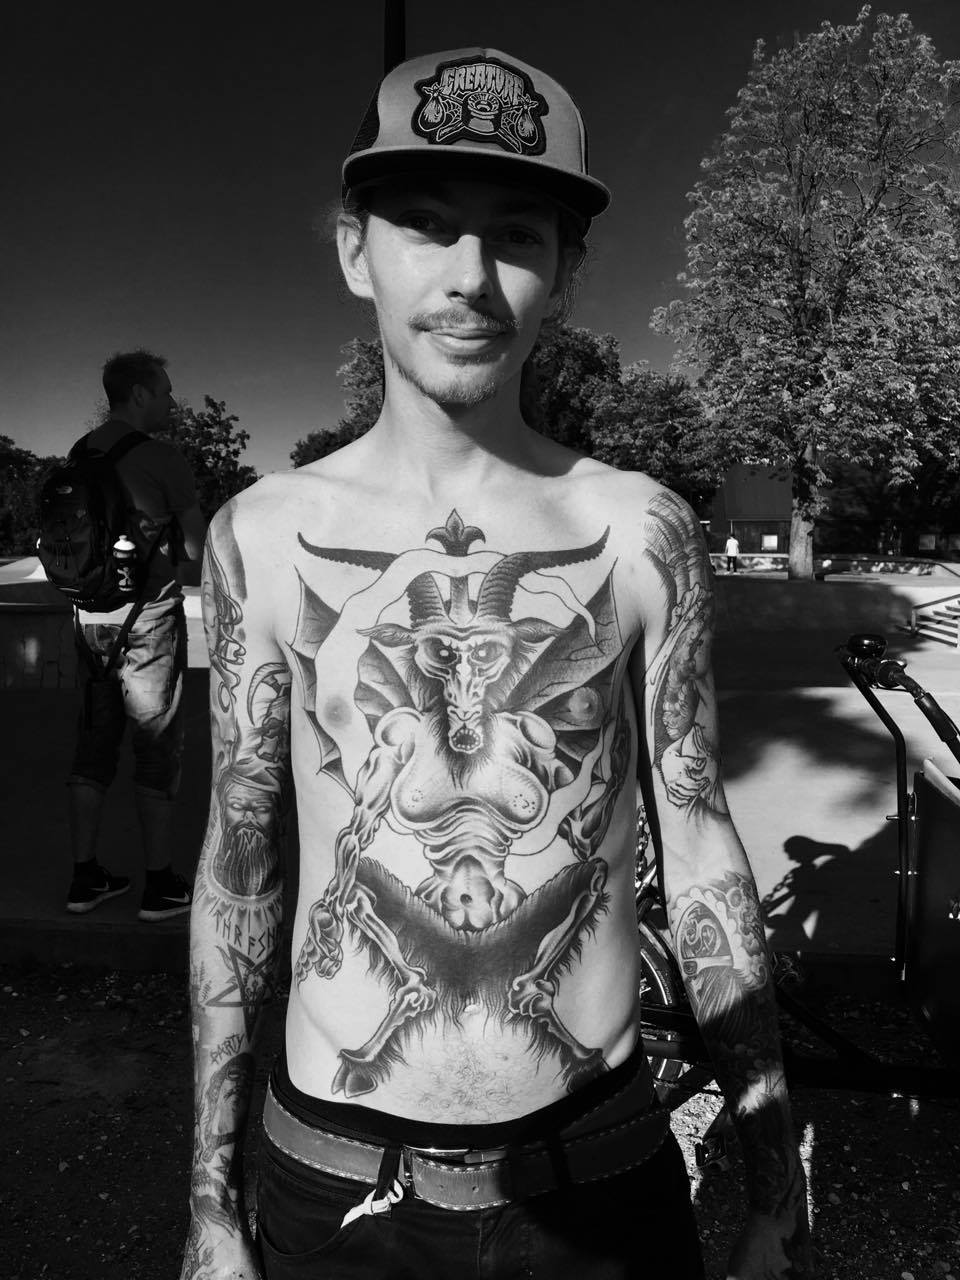 Morten with some heady tattoos...foto: thomas kring